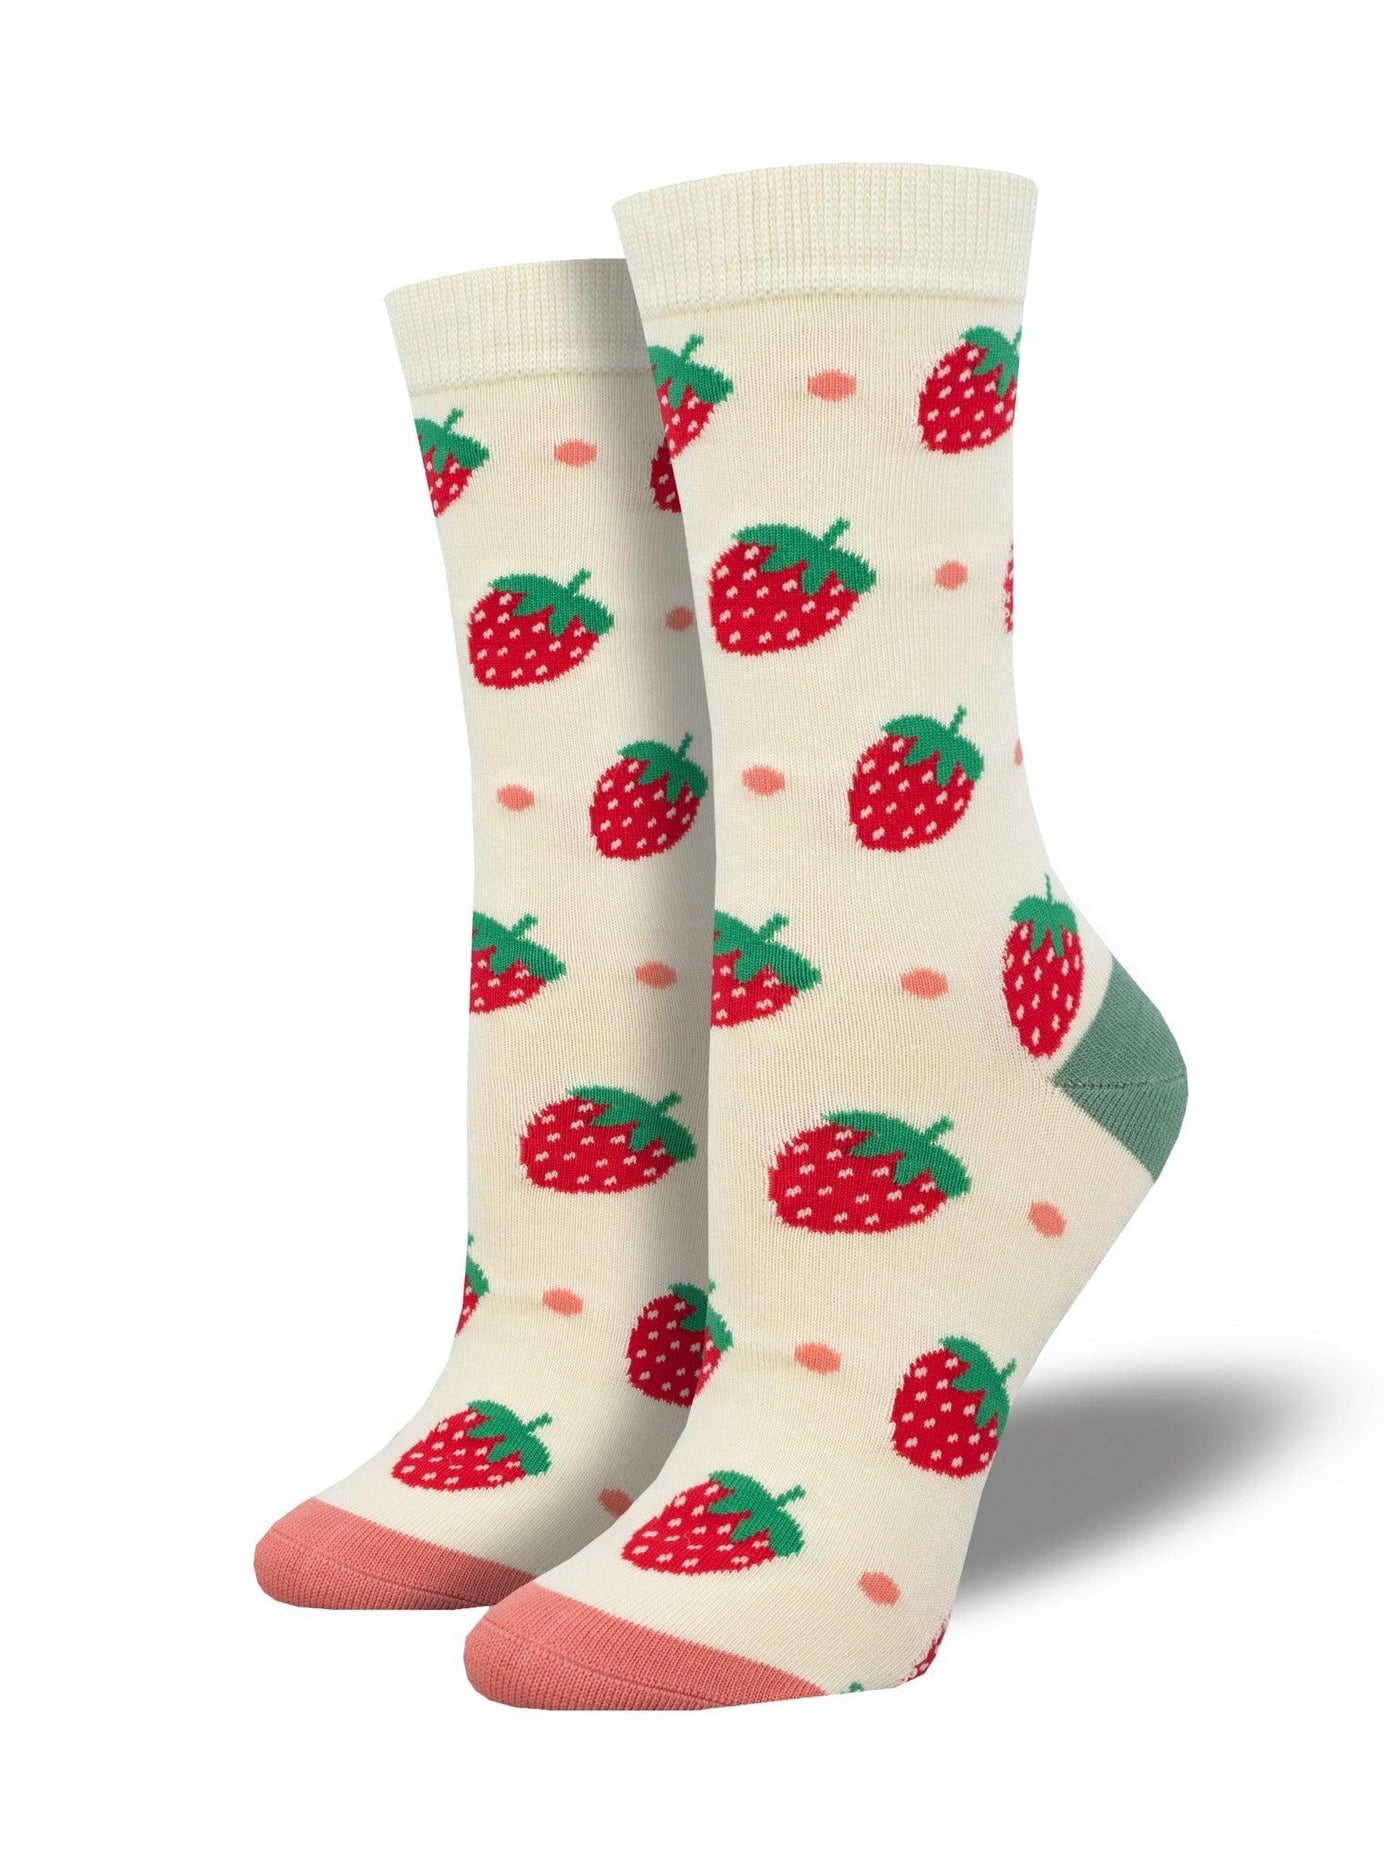 Strawberry Delight, Bamboo, Women's Crew - Socksmith - The Sock Monster